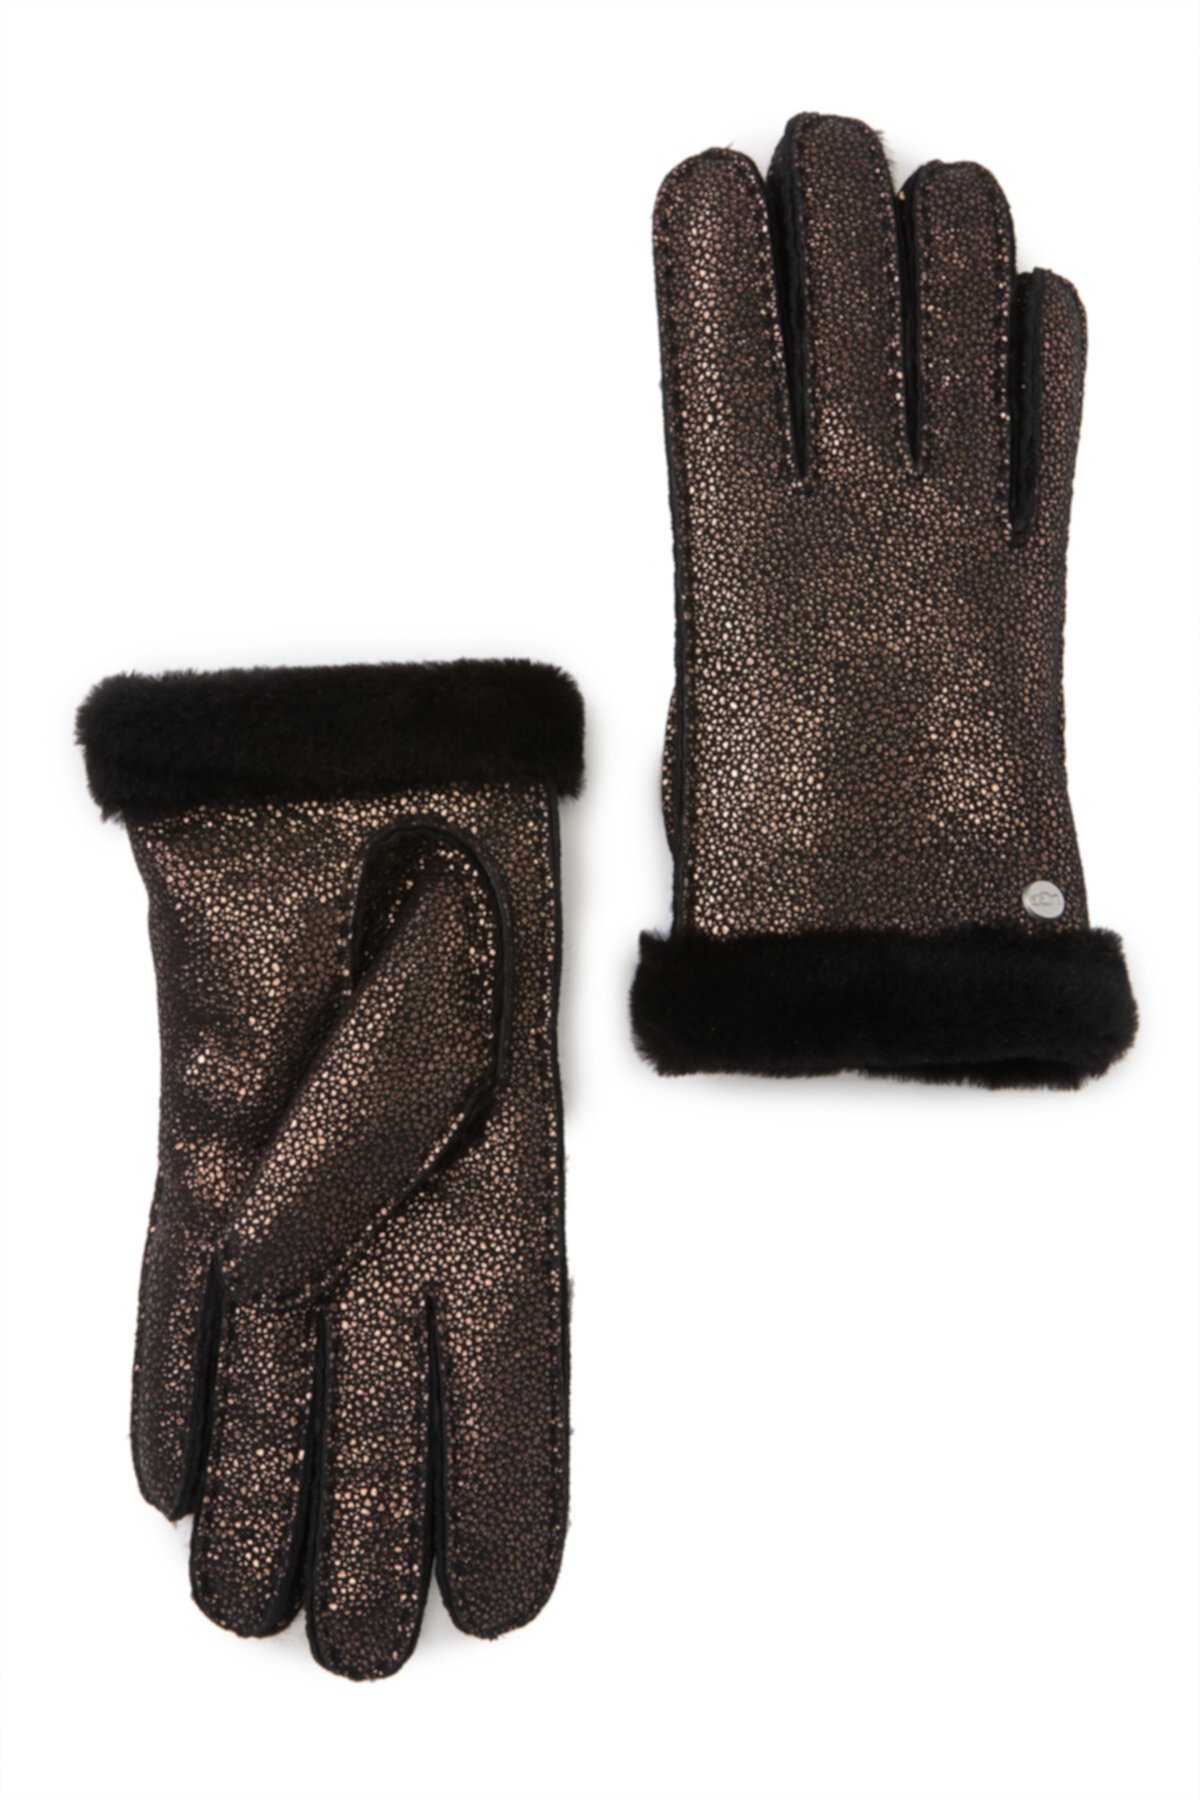 Натуральные крашеные перчатки с короткими рукавами из короткой шерсти UGG